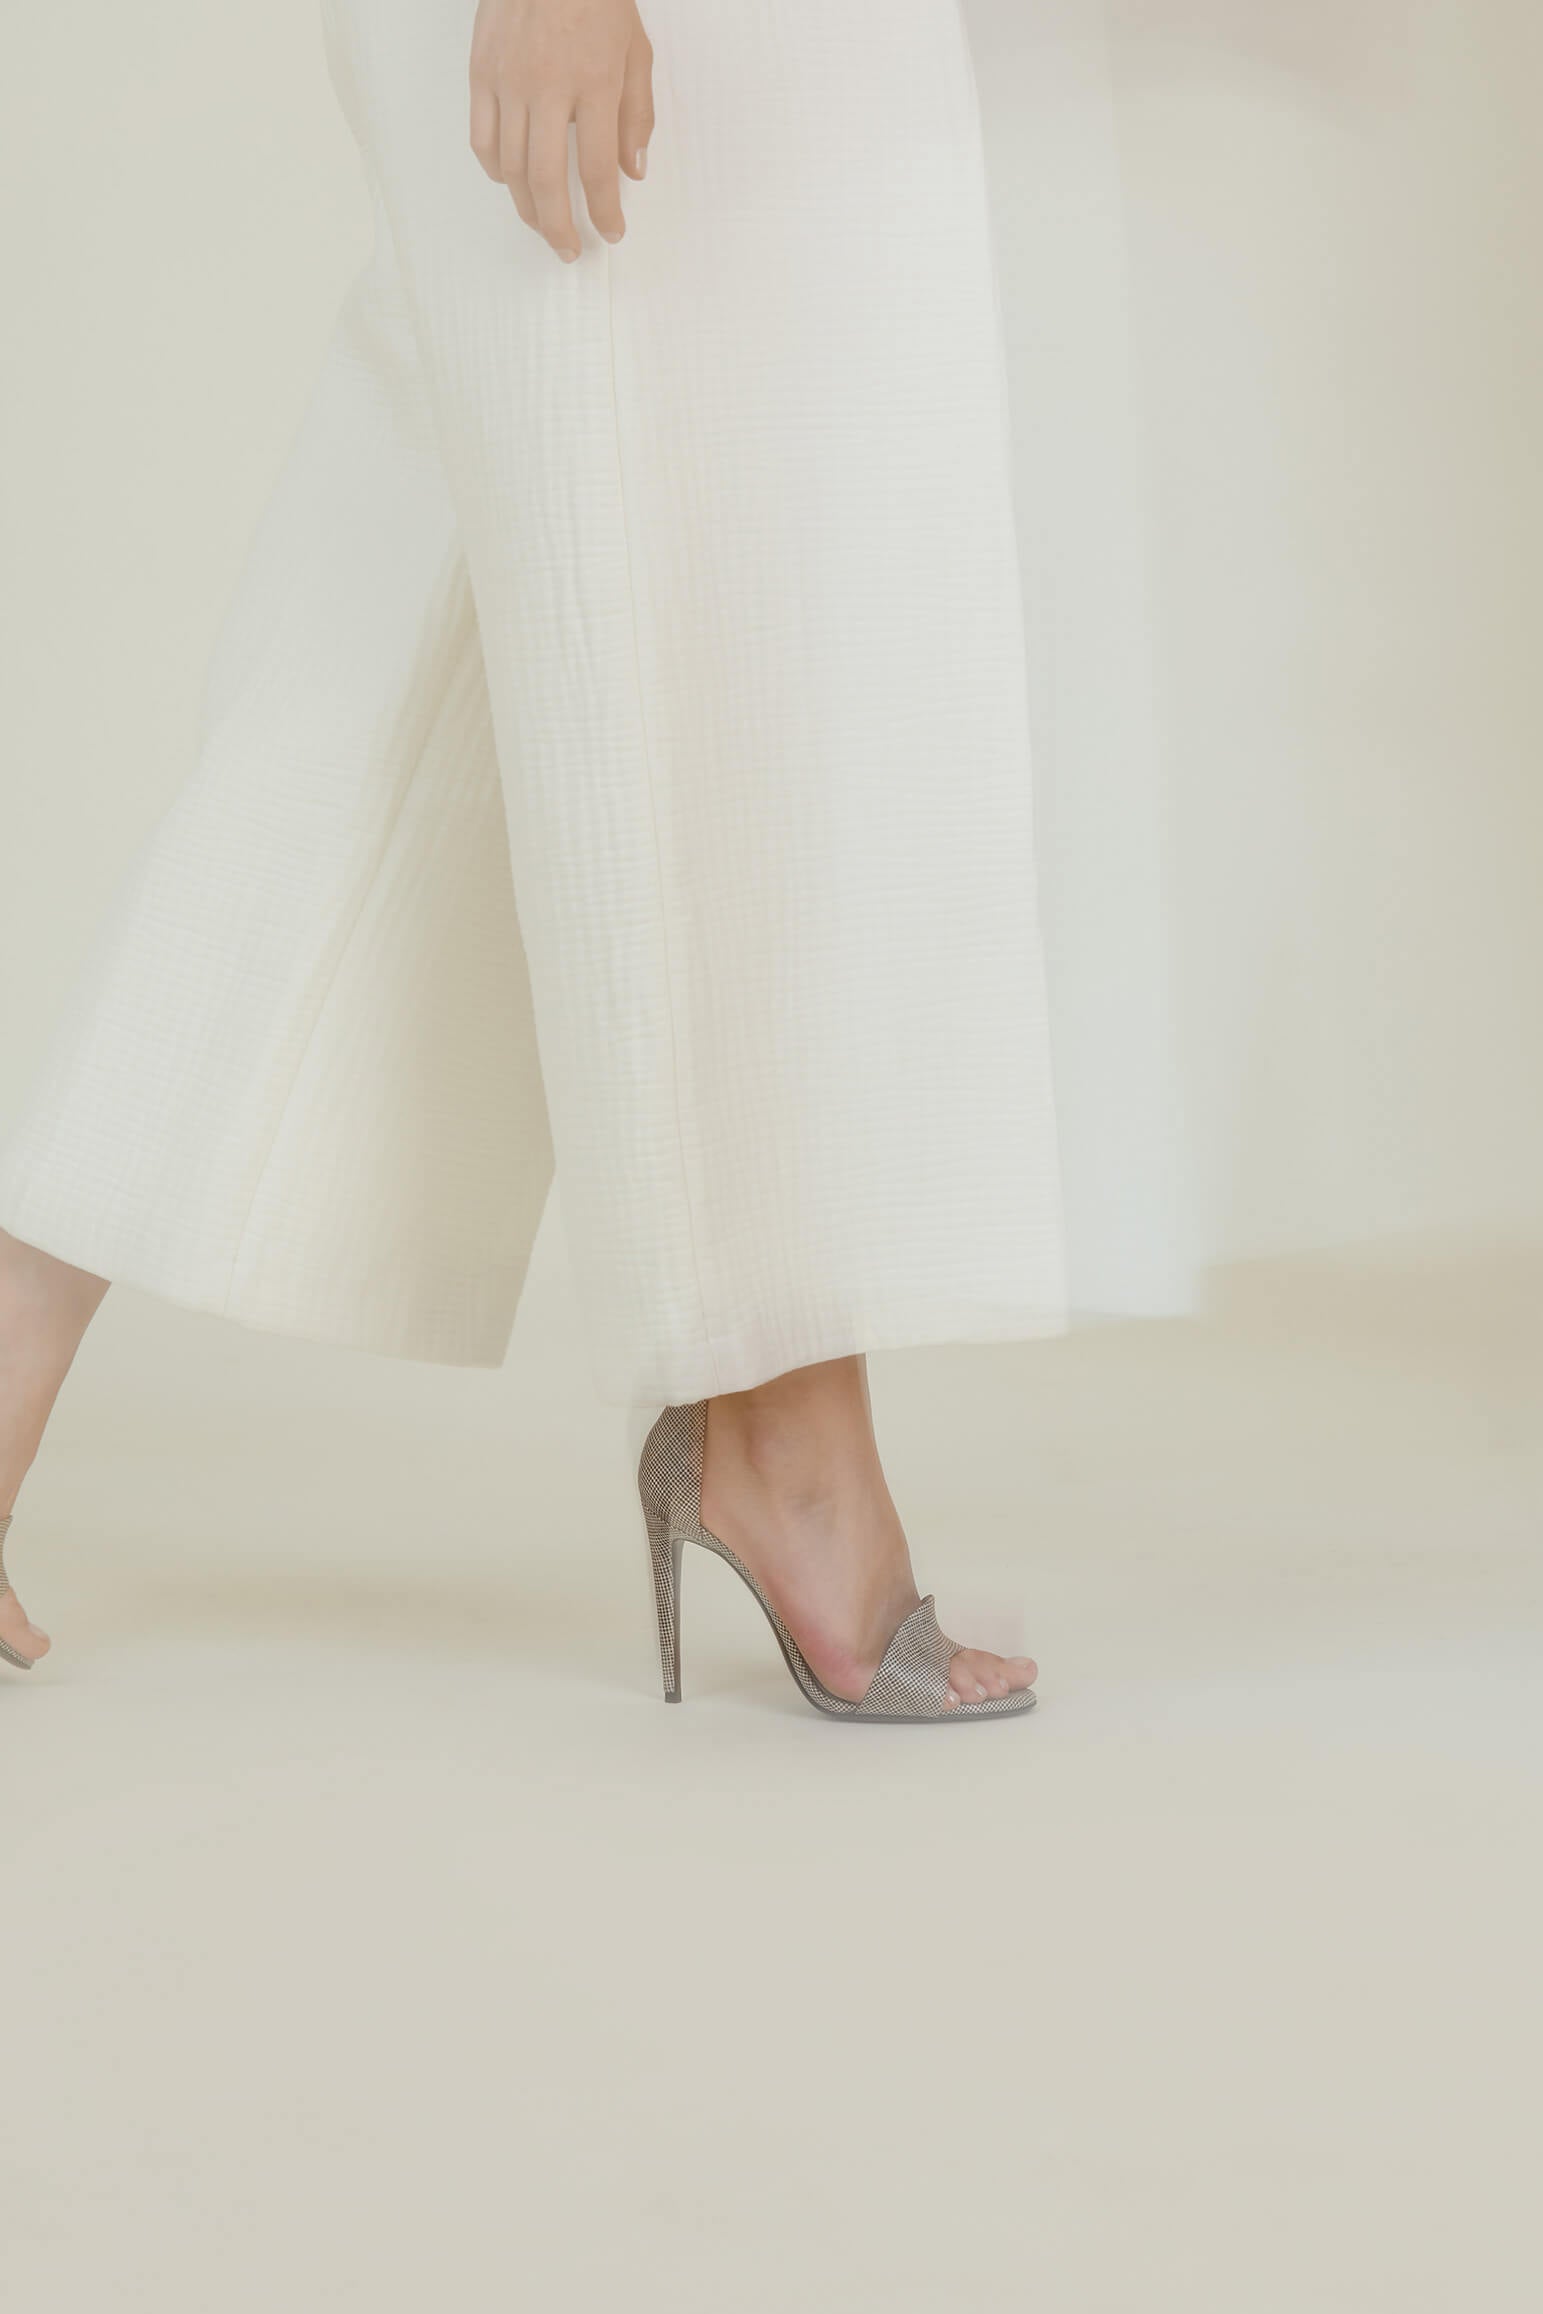 Avec ses lignes pures et son dessin structuré, la sandale N.001 représente l’image que nous nous faisons de la couture parisienne. La Ligne Numérotée, des accessoires femme haut de gamme.